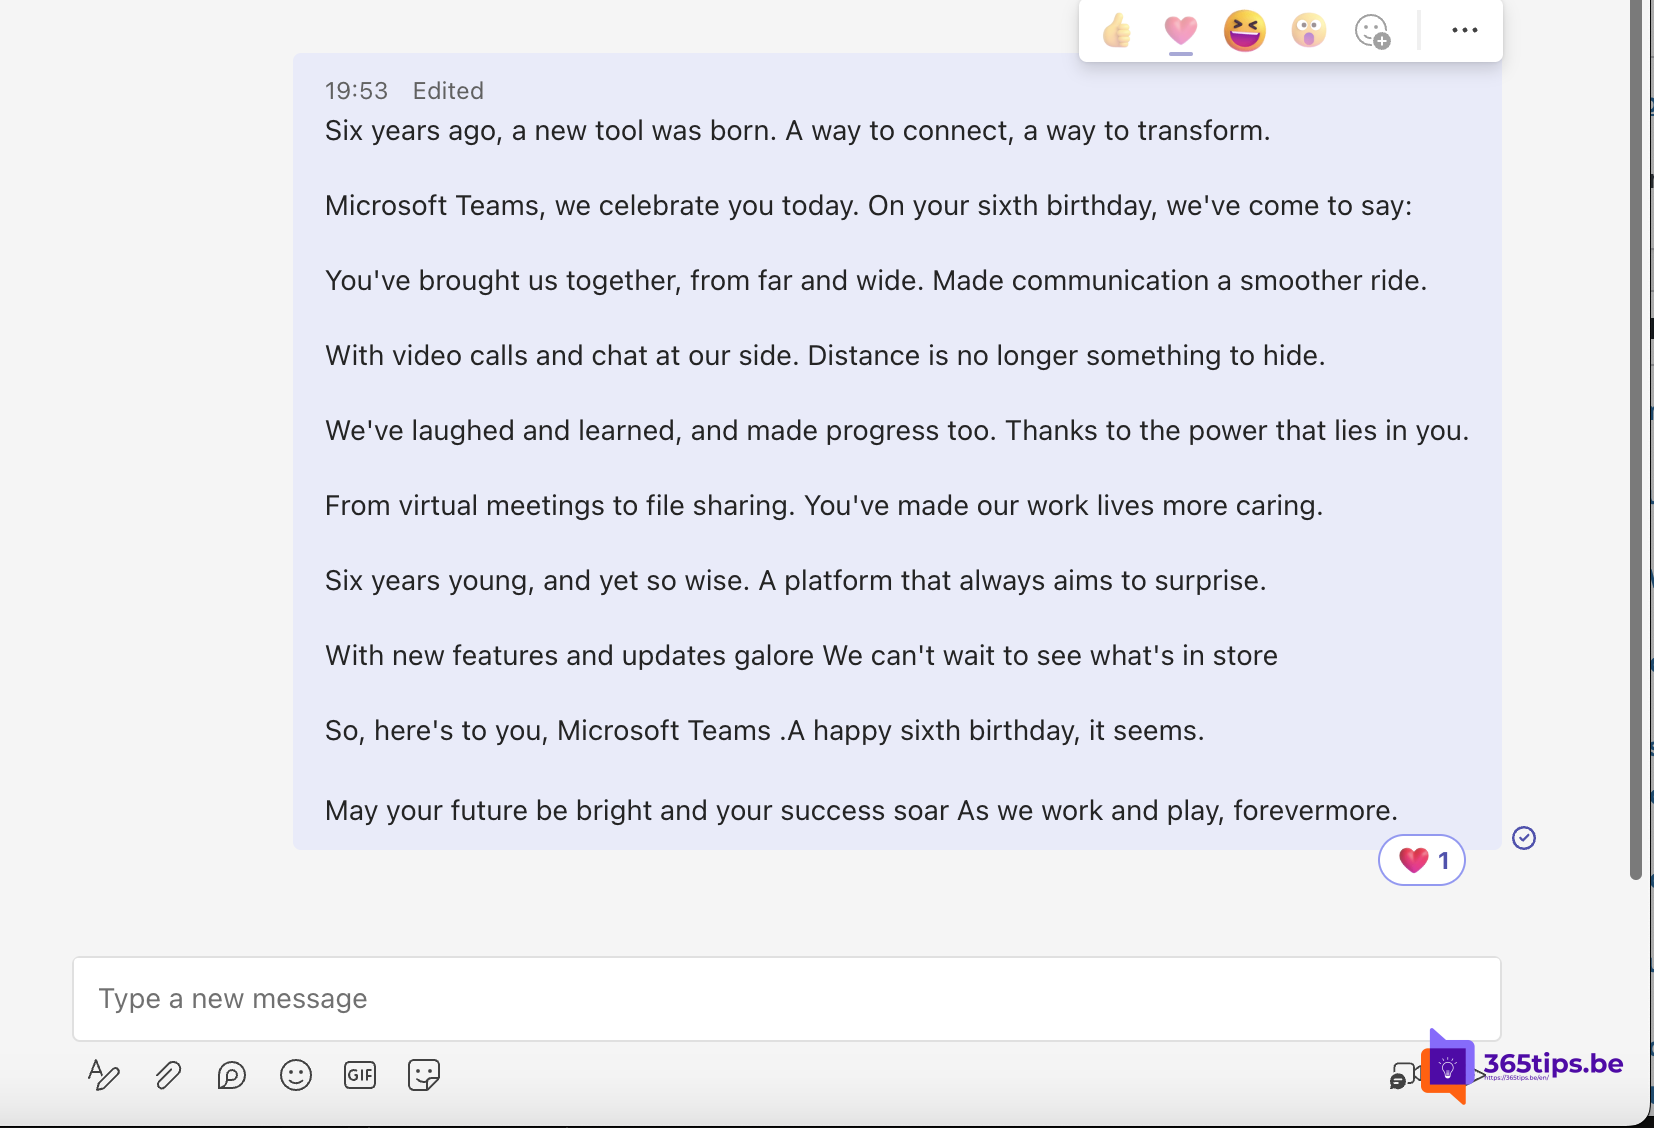 Gelukkige 6de verjaardag, Microsoft Teams! 🎉 🎈